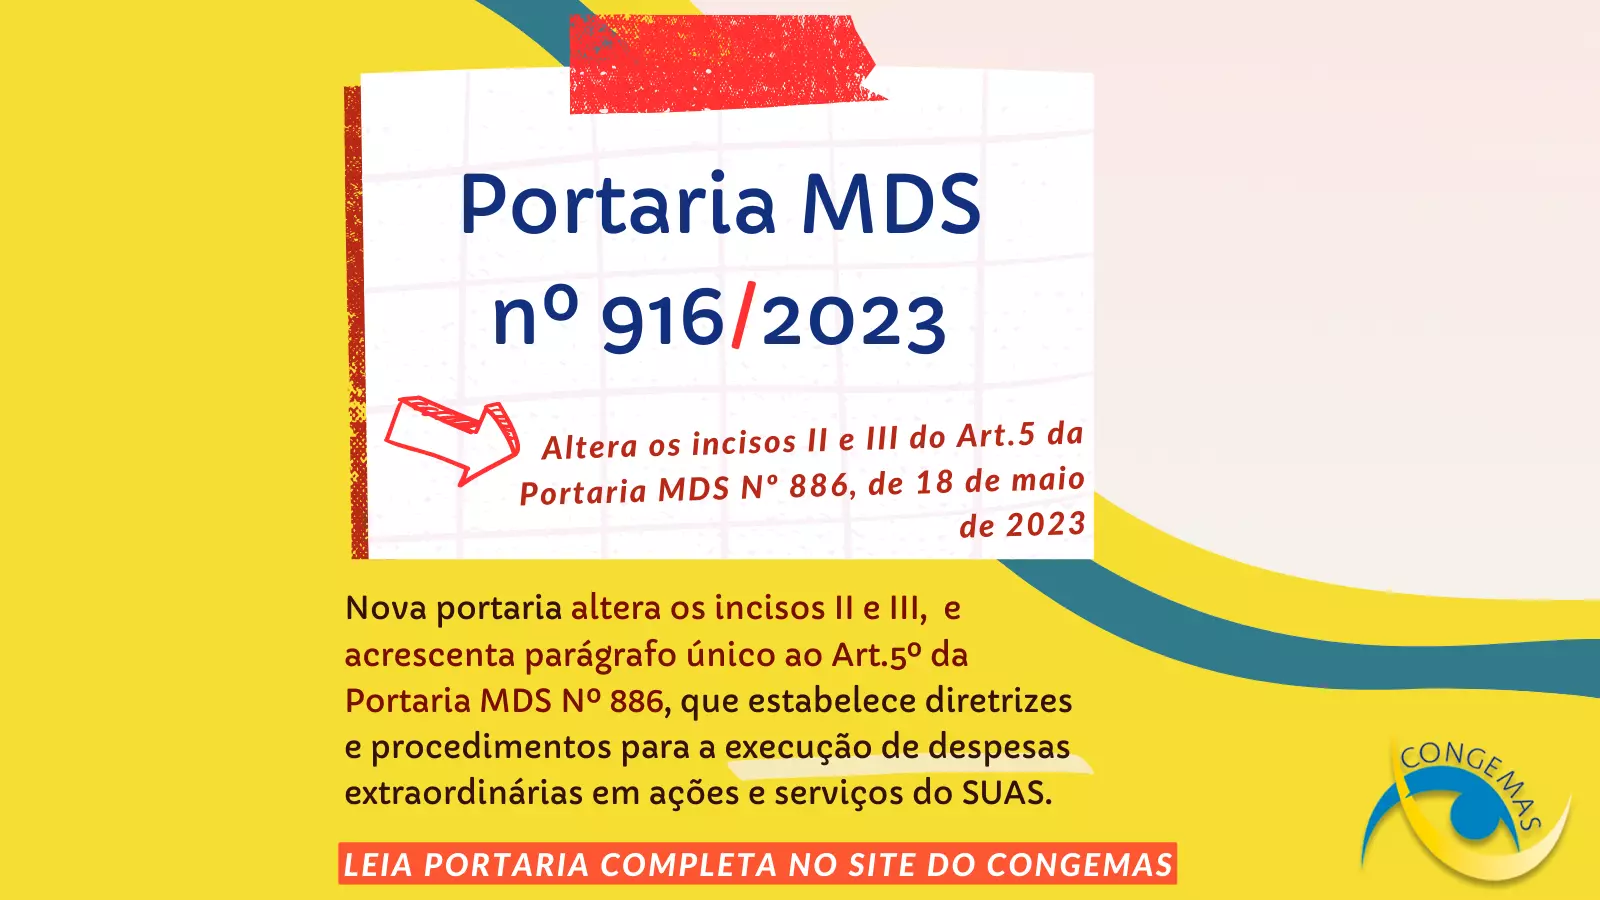 PORTARIA MDS Nº 916/2023 é publicada e traz alterações à Portaria MDS Nº 886/2023